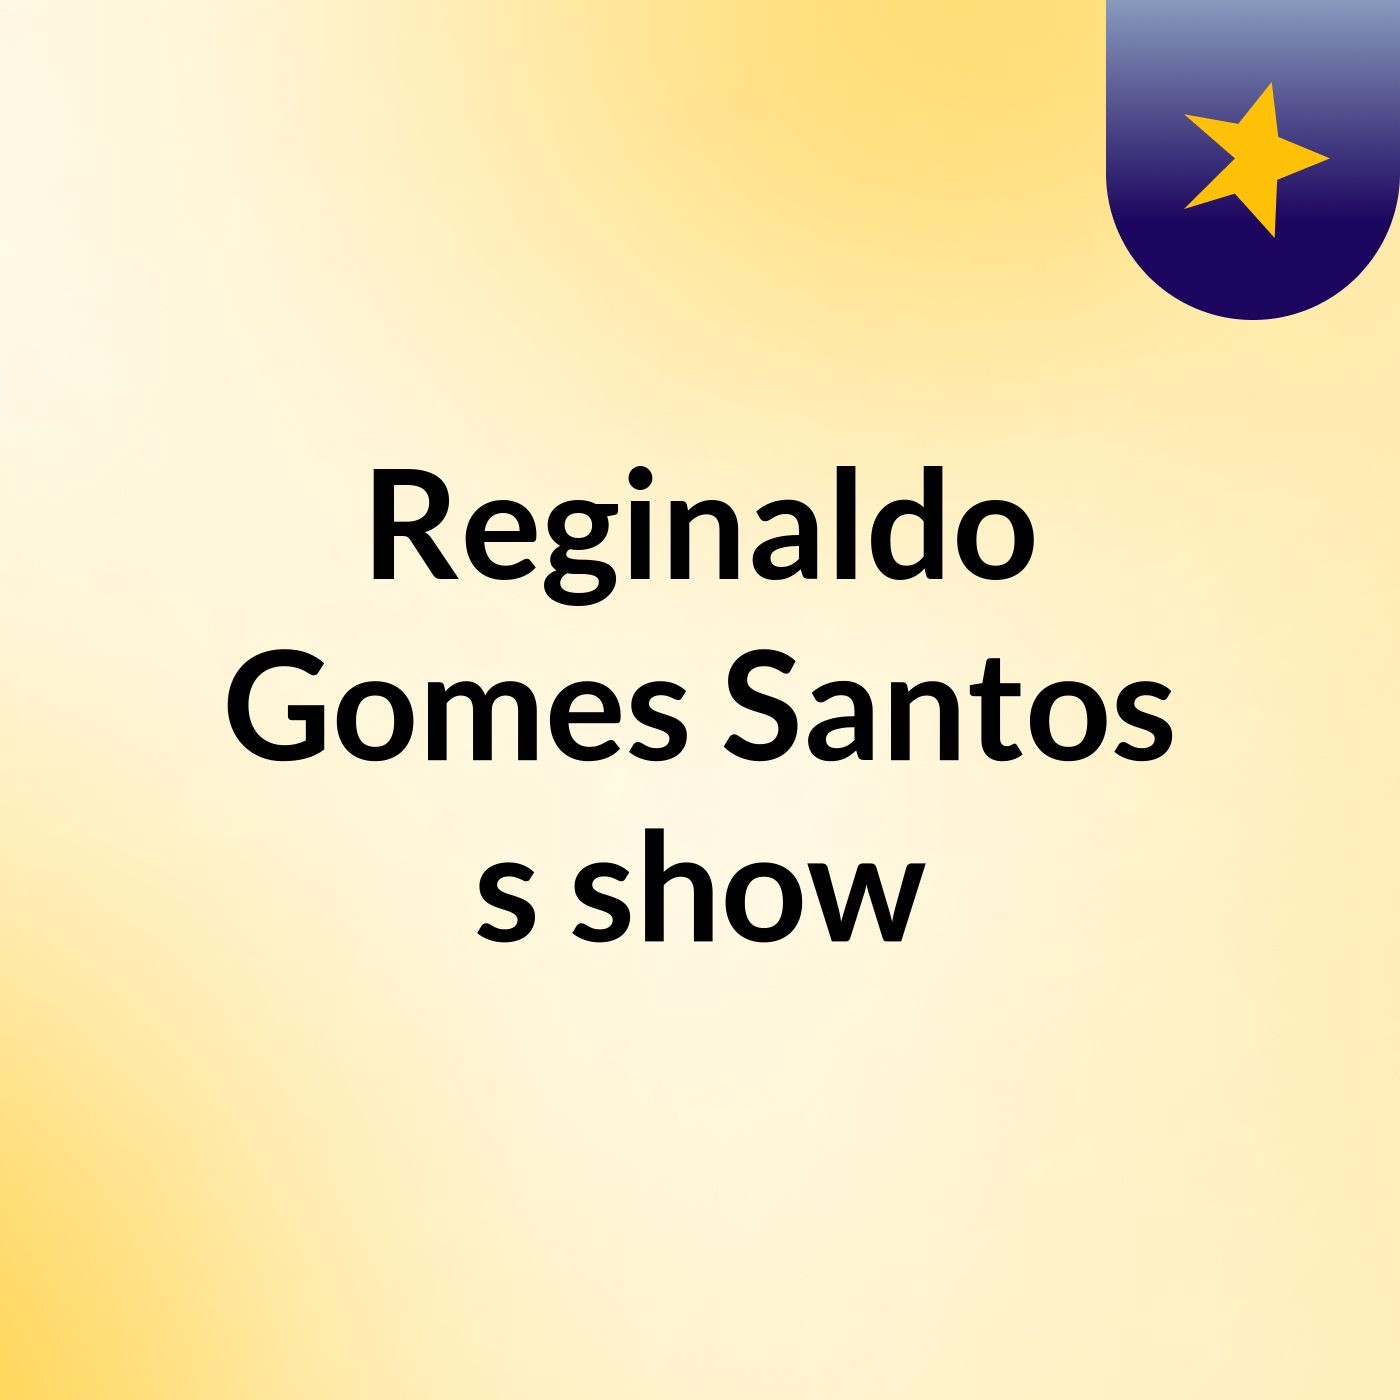 Reginaldo Gomes Santos's show